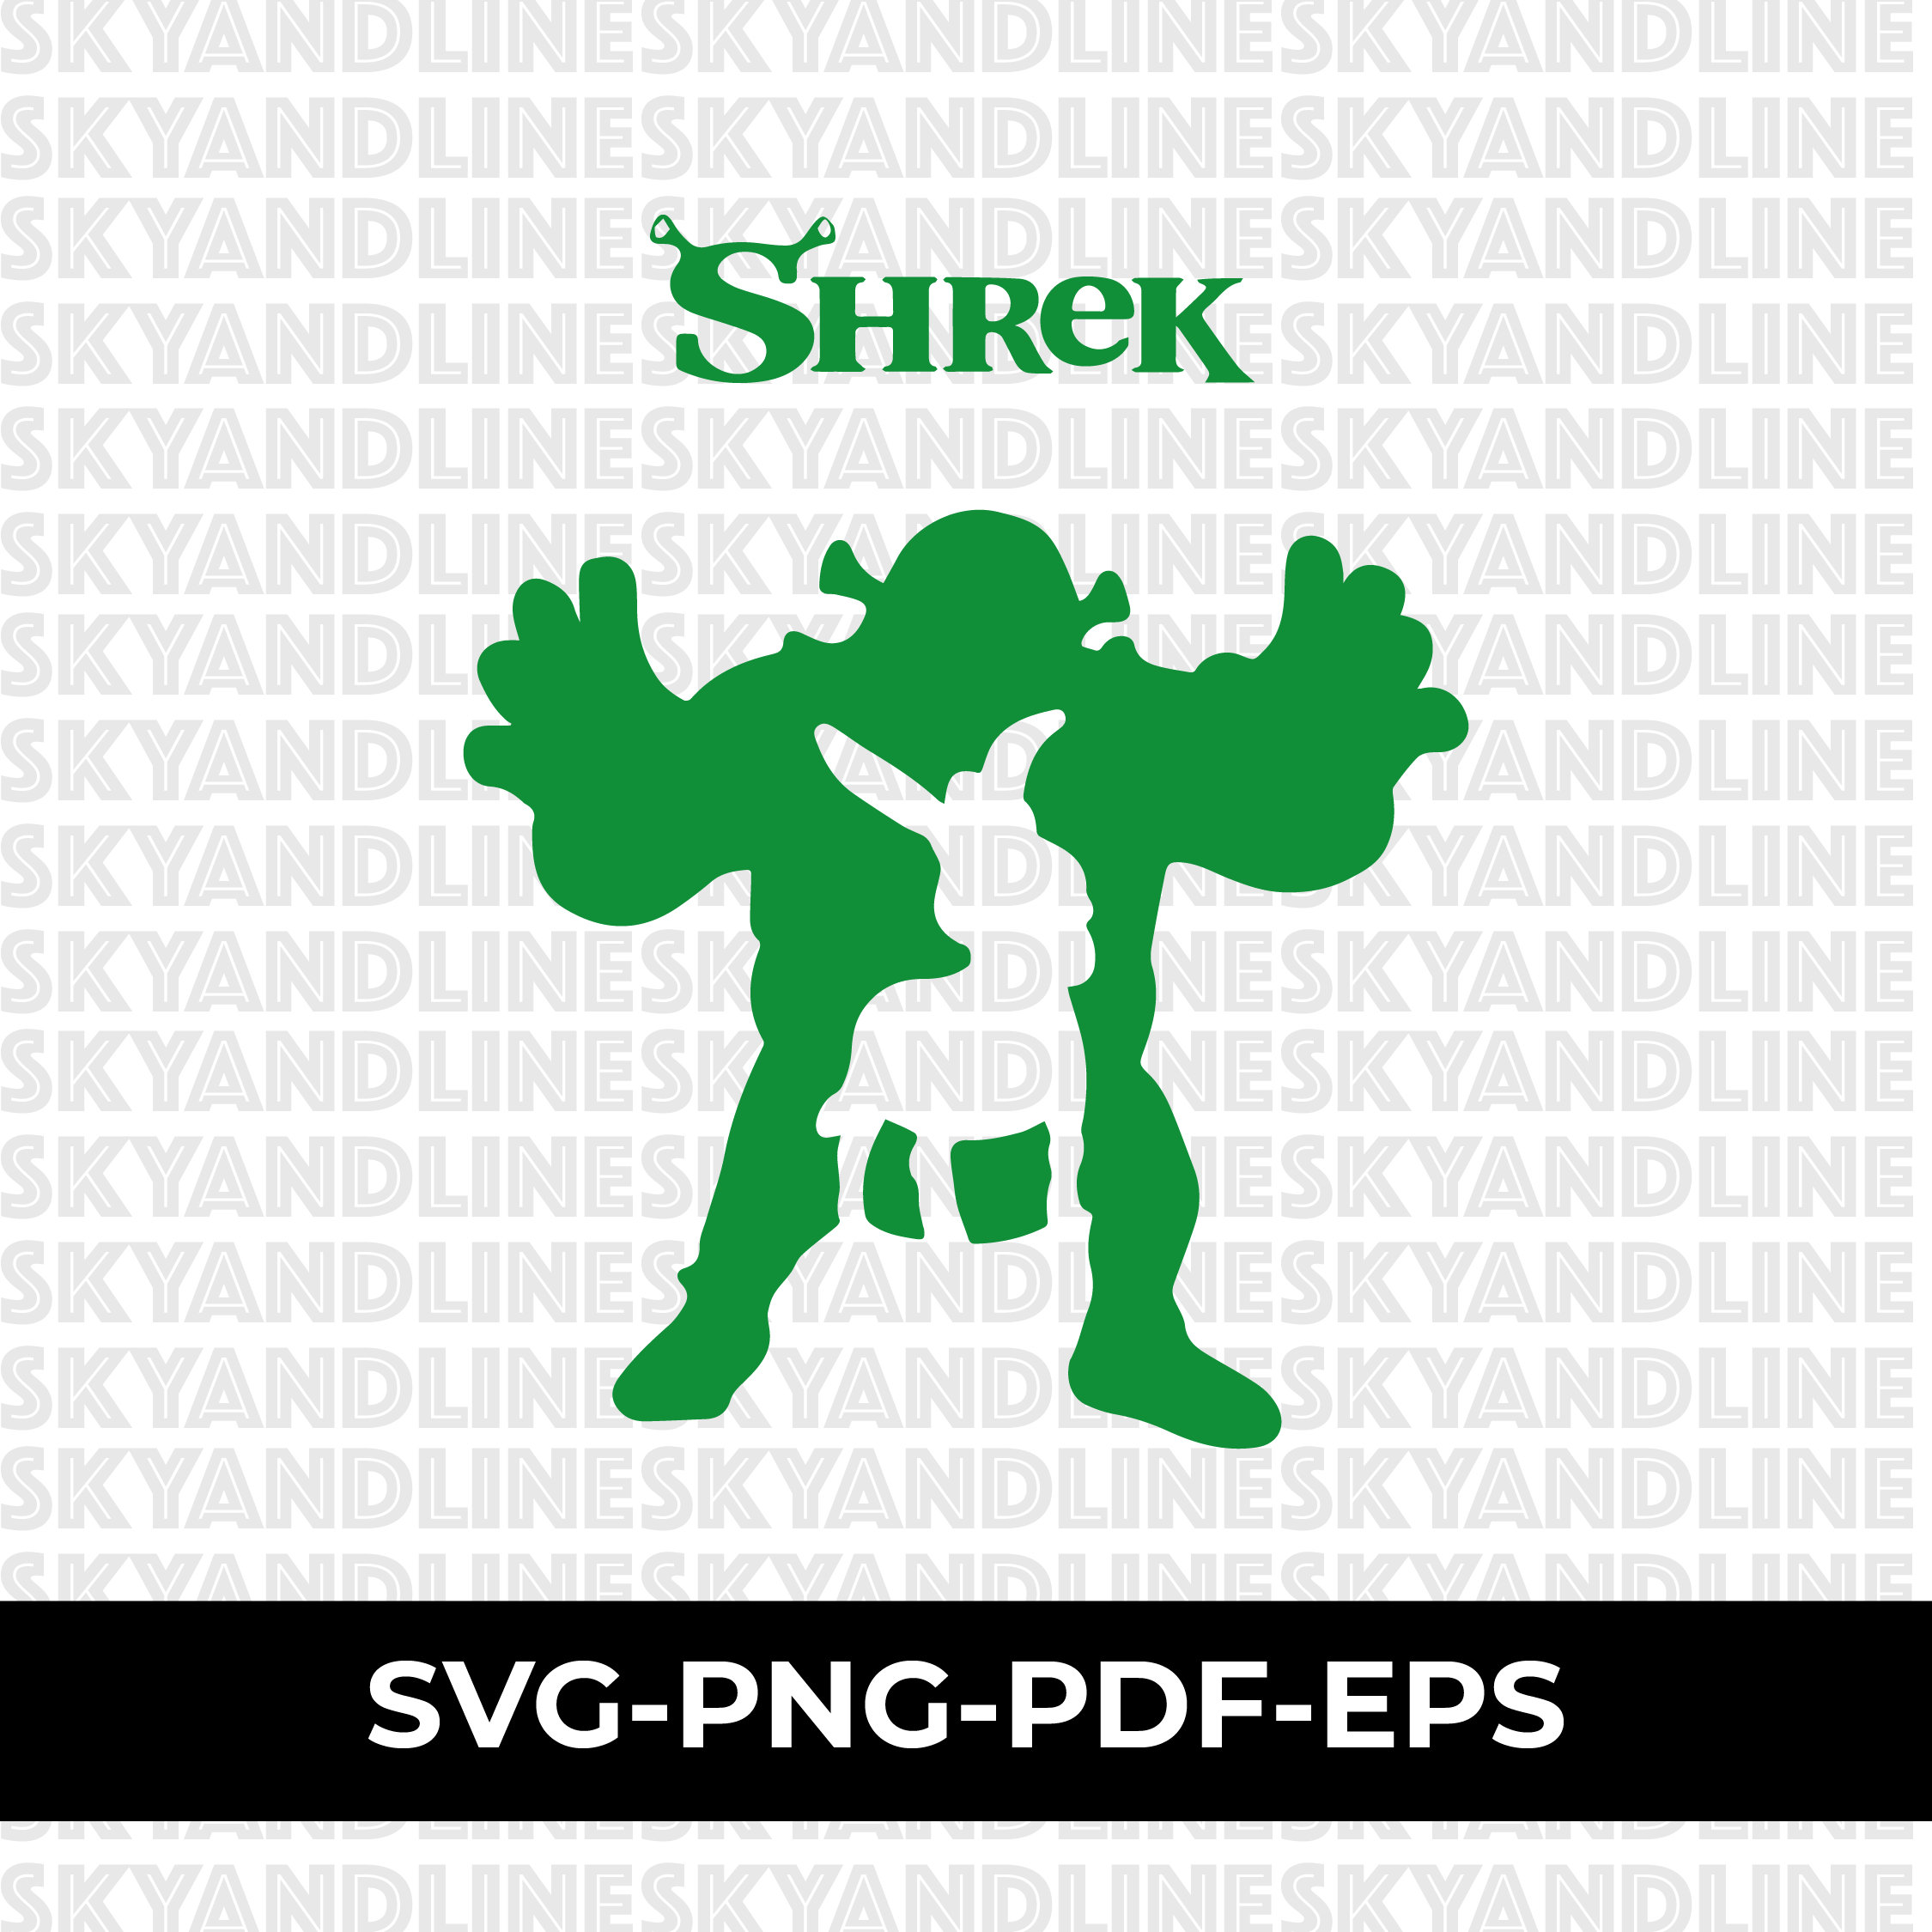 Shrek SVG, Shrek clipart, Shrek shirt svg, Shrek vector, cut file